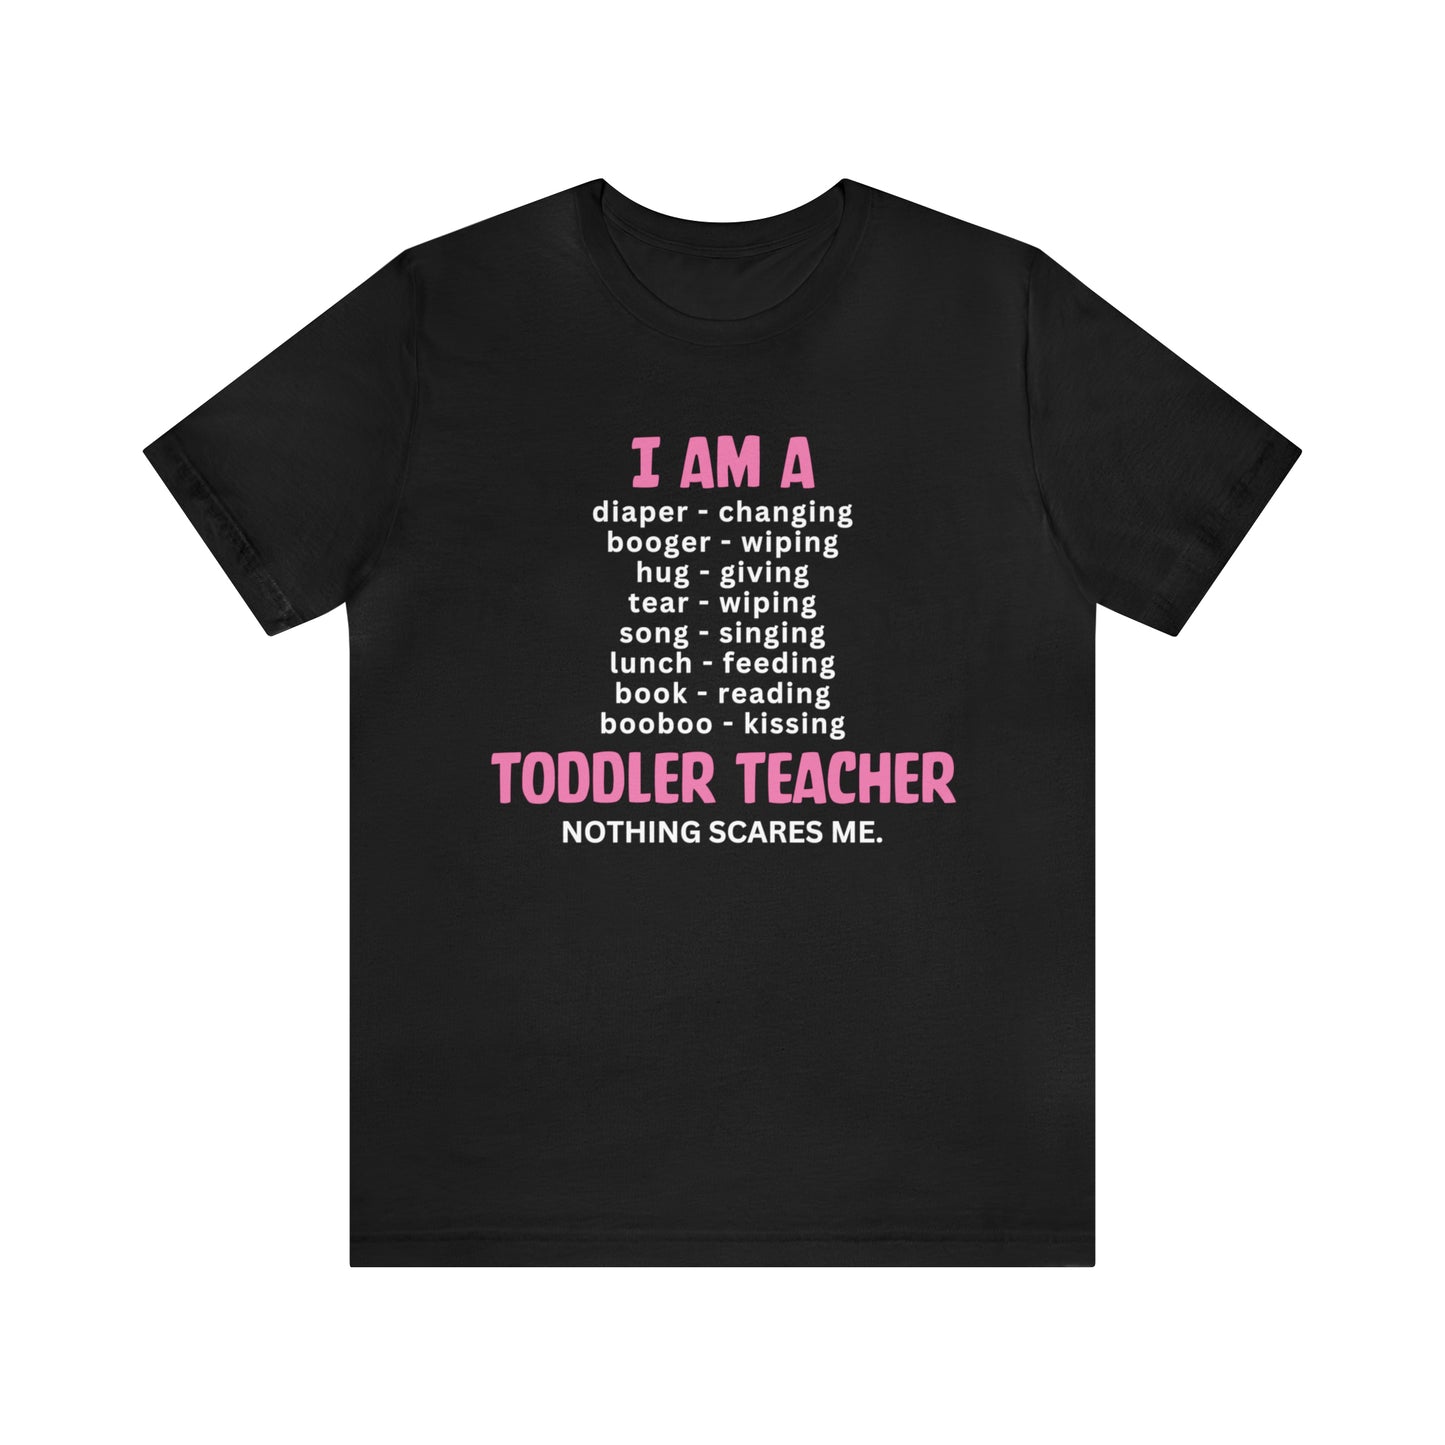 I Am A Toddler Teacher Shirt, Kindergarten Teacher Gifts, Preschool Teacher Shirt, First Day of School T-Shirt